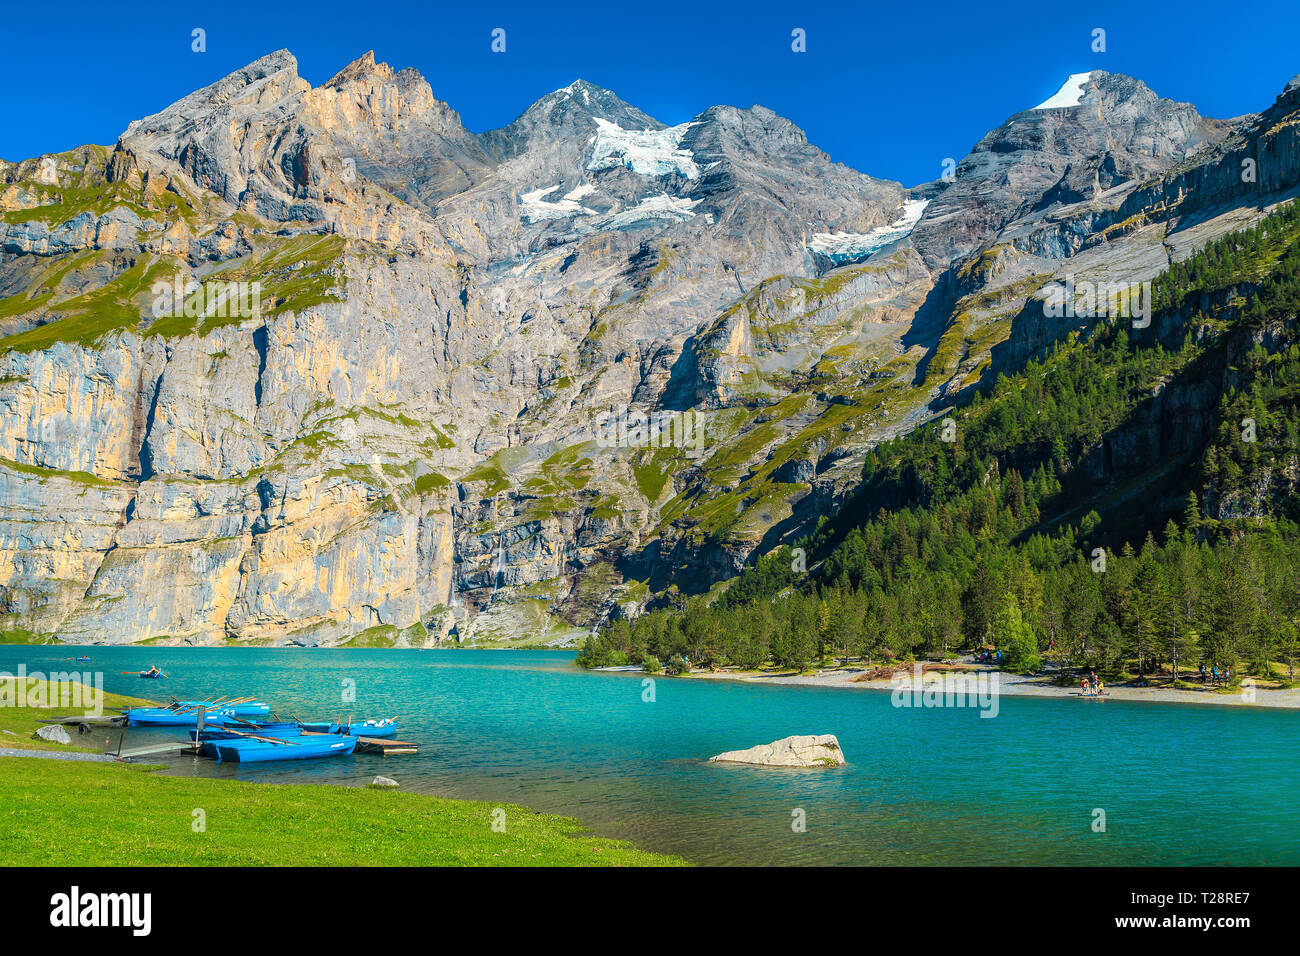 Famoso Viaggio e luogo di svago, splendido lago alpino e montagne innevate con barche colorate, Oeschinensee lago, Oberland bernese, Svizzera, Euro Foto Stock